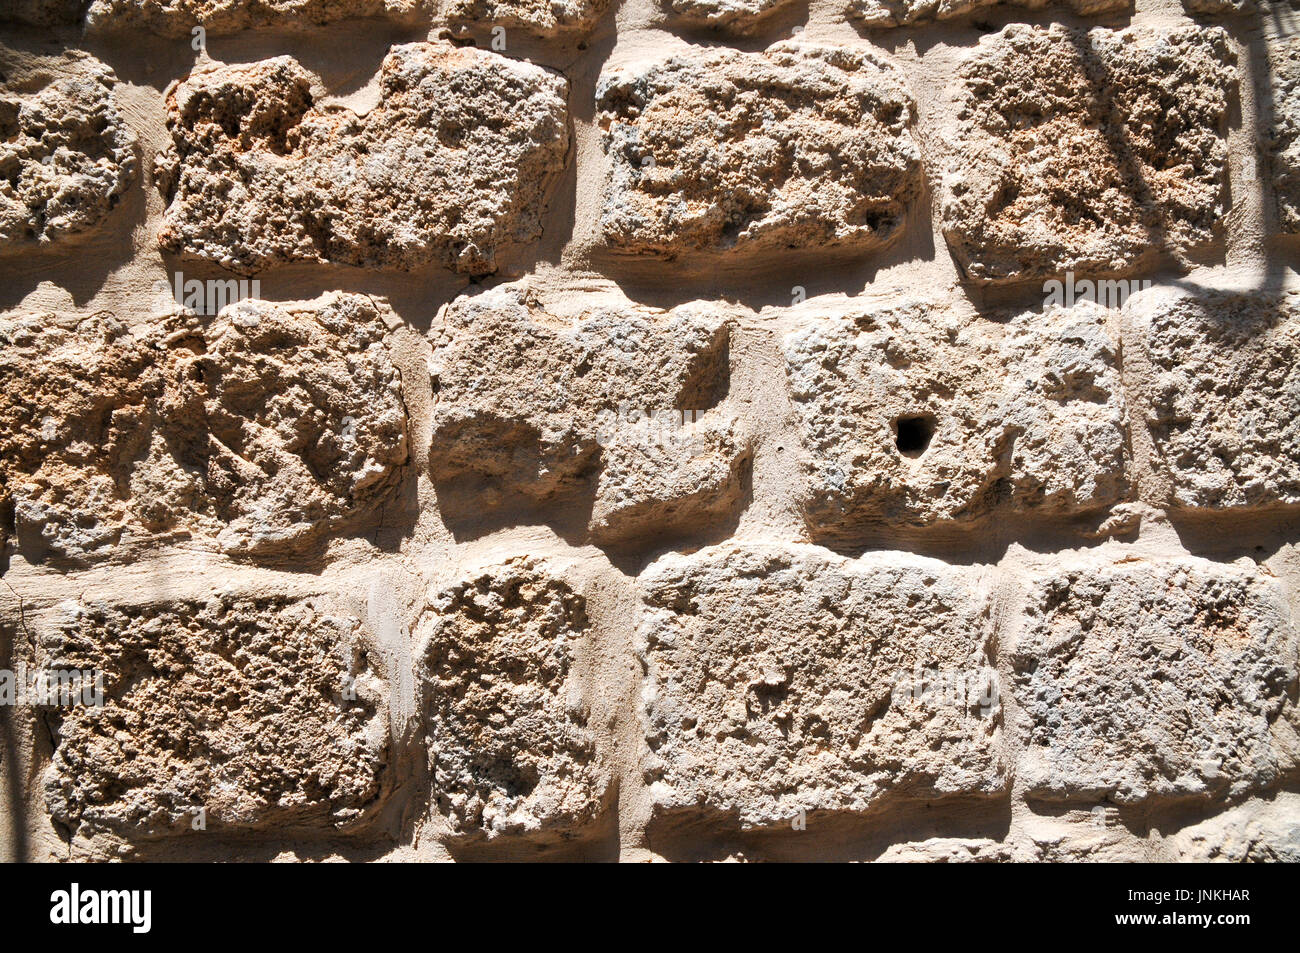 Close up d'un mur construit à partir du pétrole brut de briques Kurkar un grès calcaire fossilisé ou les dunes de sable de mer commun dans Israël. Photographié à Acre Banque D'Images